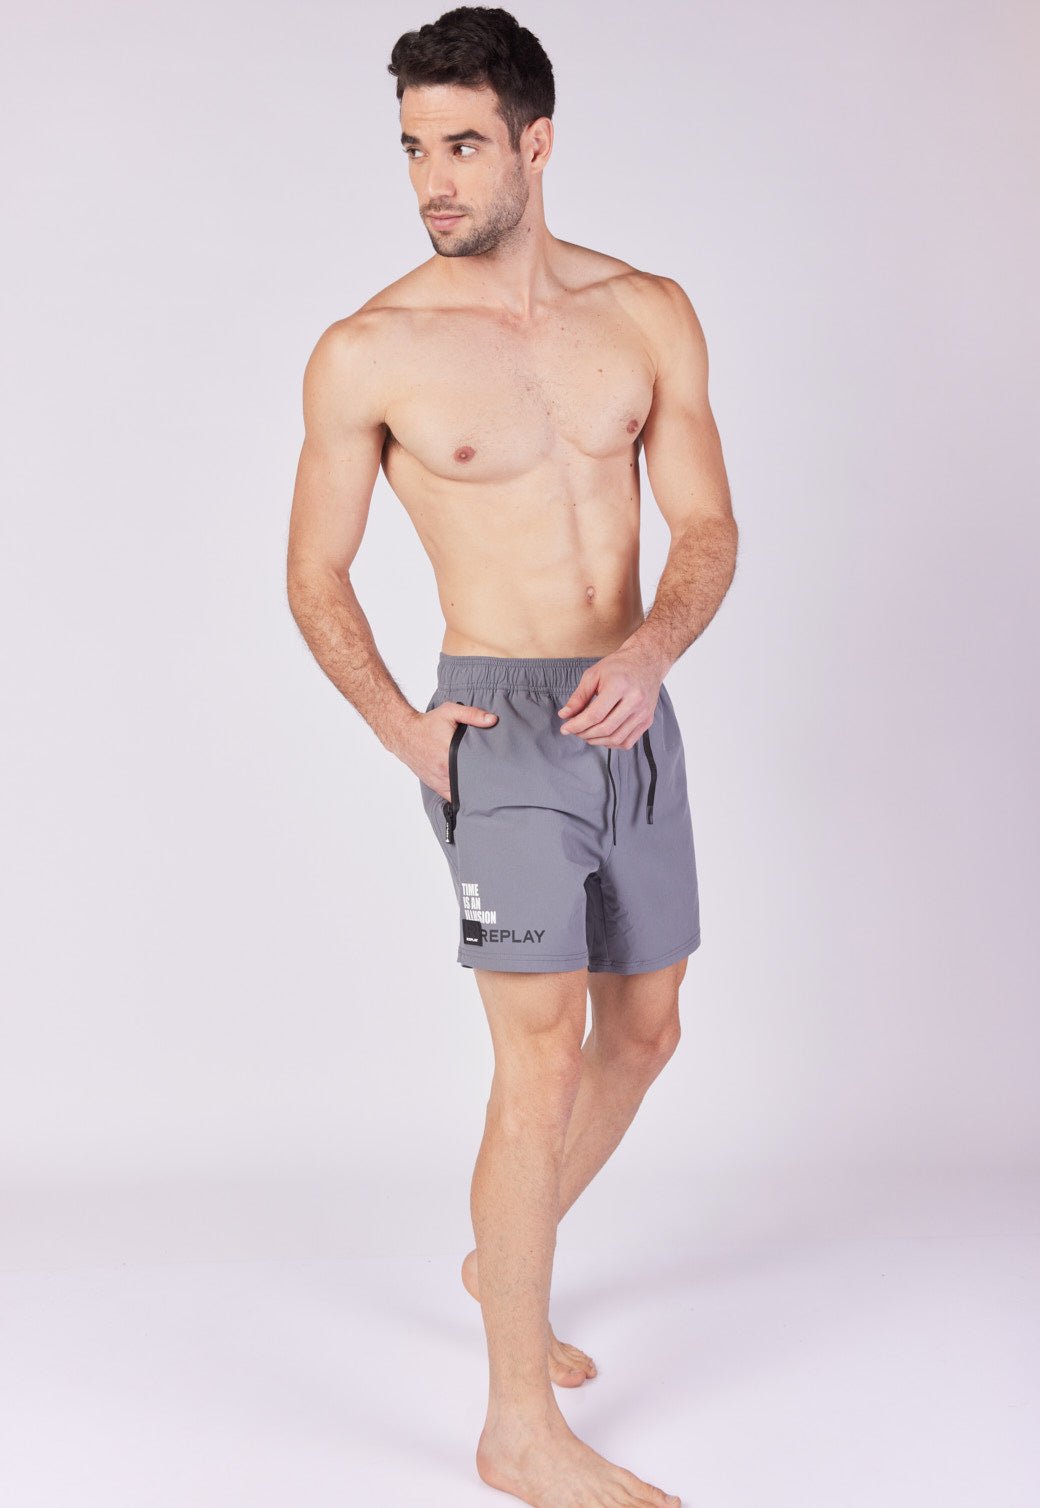 מכנסי בגד ים עם הדפסי לוגו גברים - Replay